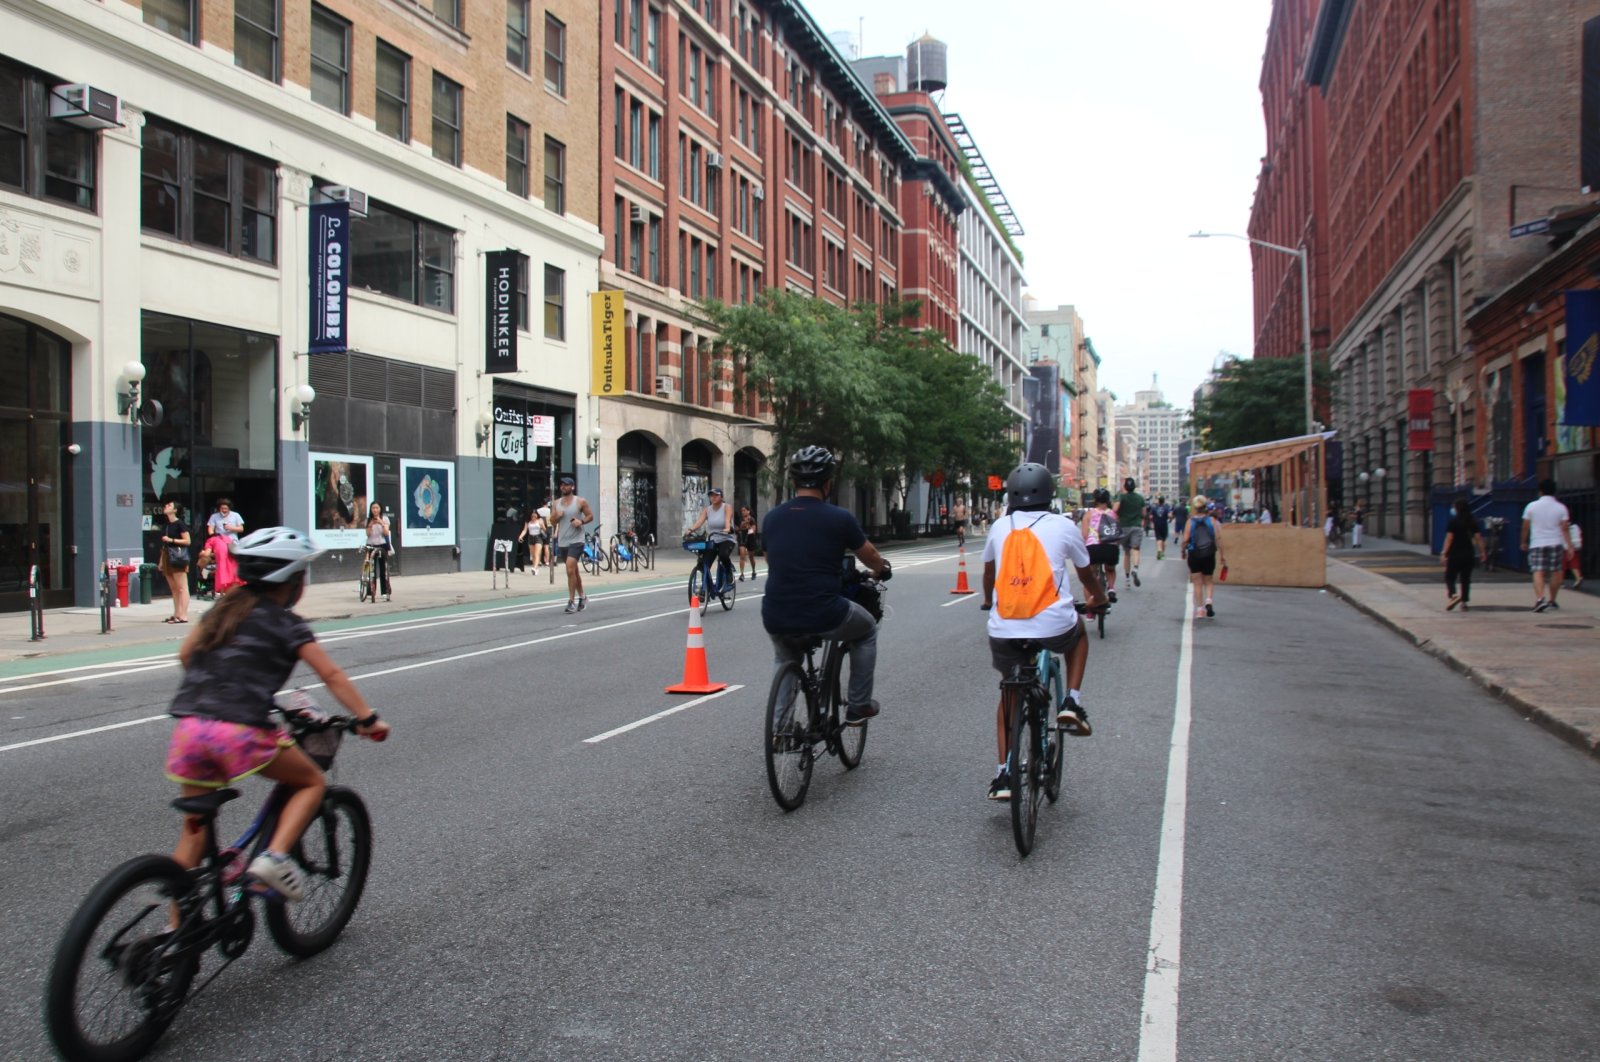 Aman, menyenangkan, cepat: Menjelajahi Kota New York dengan sepeda